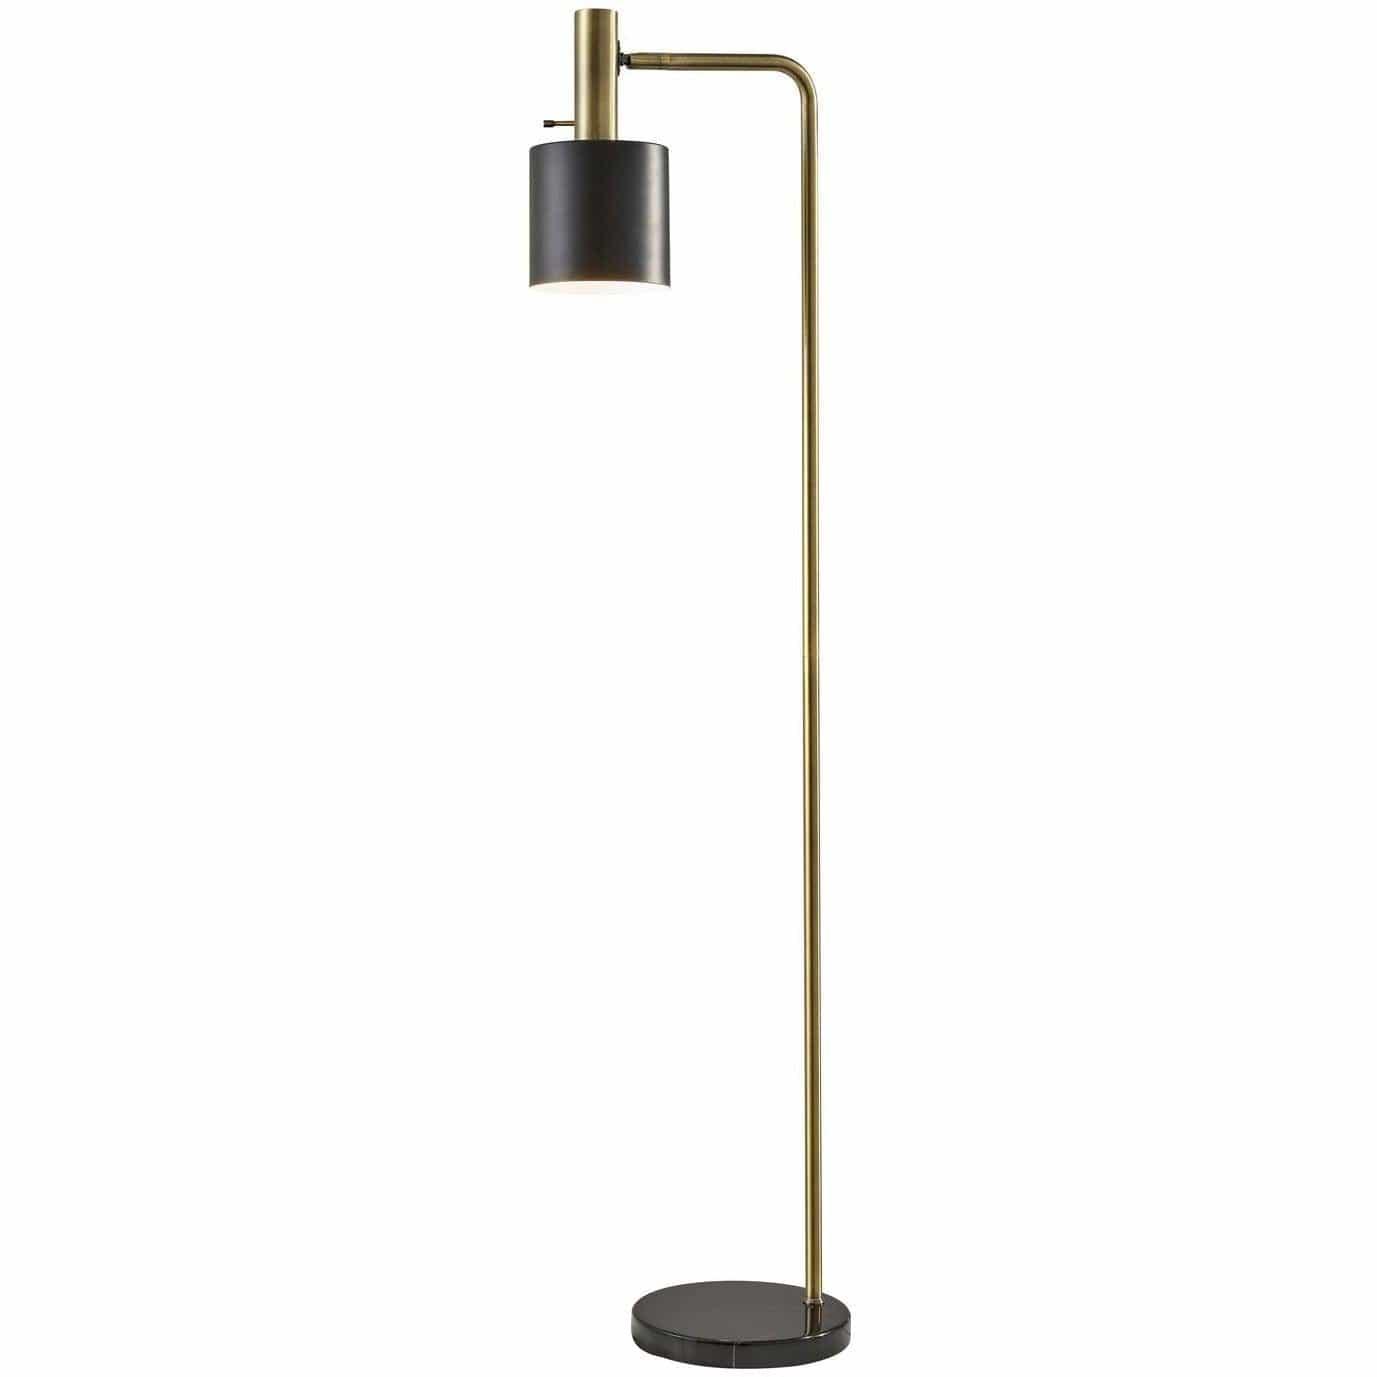 Adesso Home - Emmett Floor Lamp - 3159-01 | Montreal Lighting & Hardware